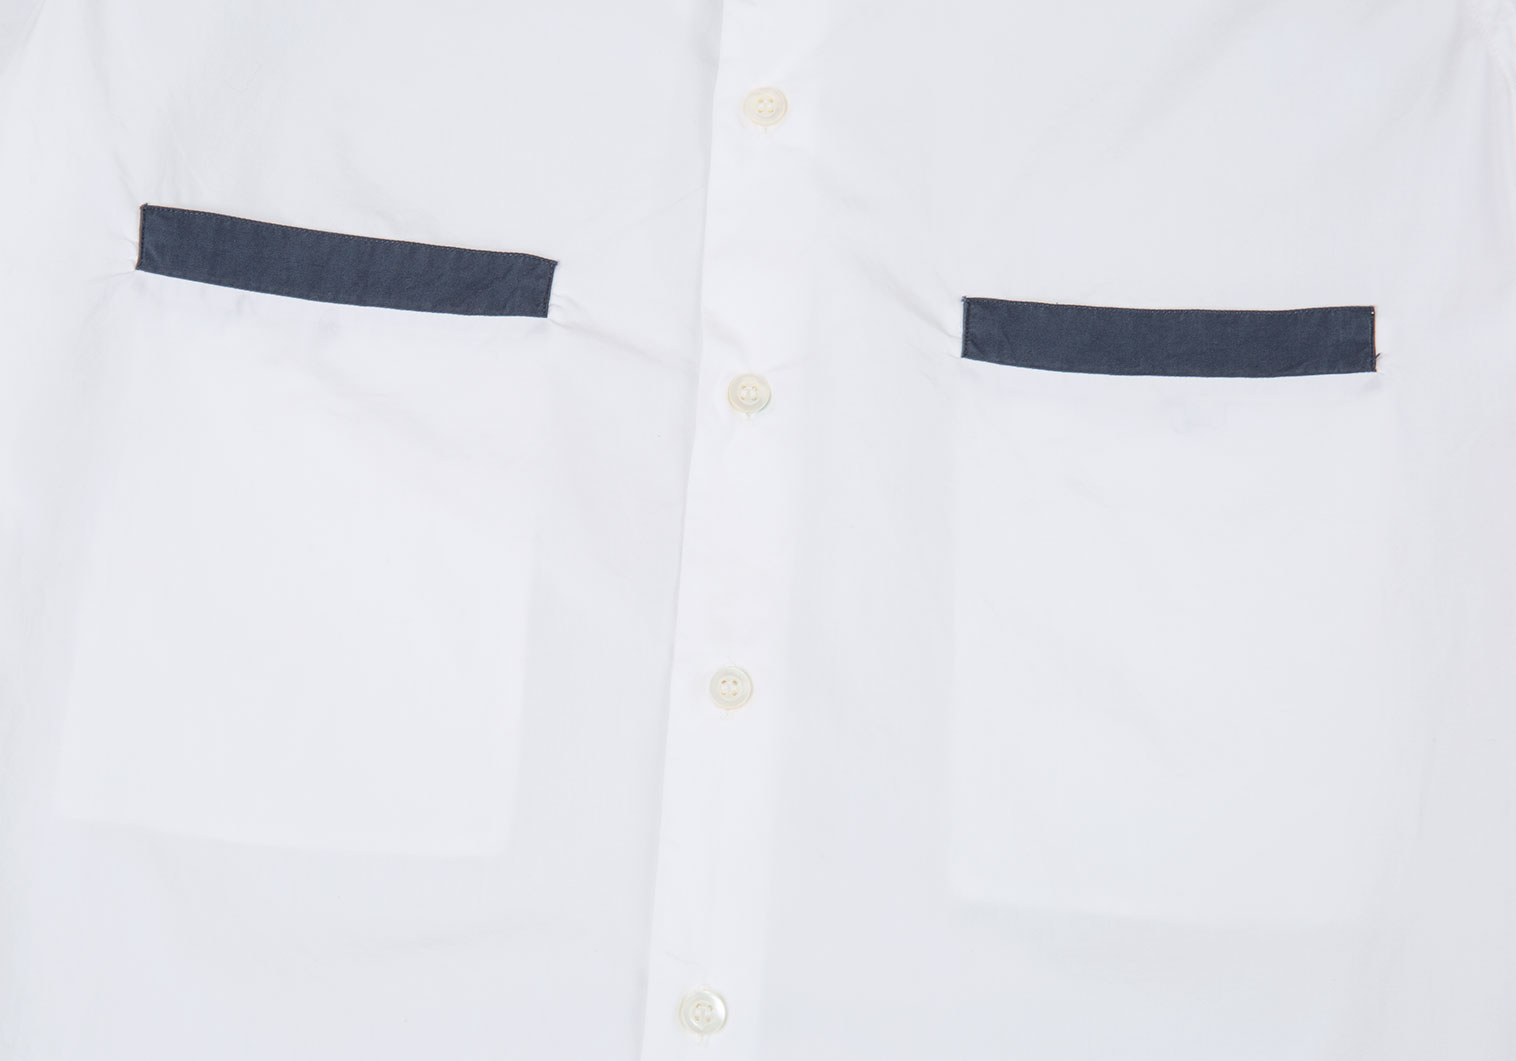 『ARMANI』 / アルマーニ ドレス Yシャツ 39サイズ S 新品未使用